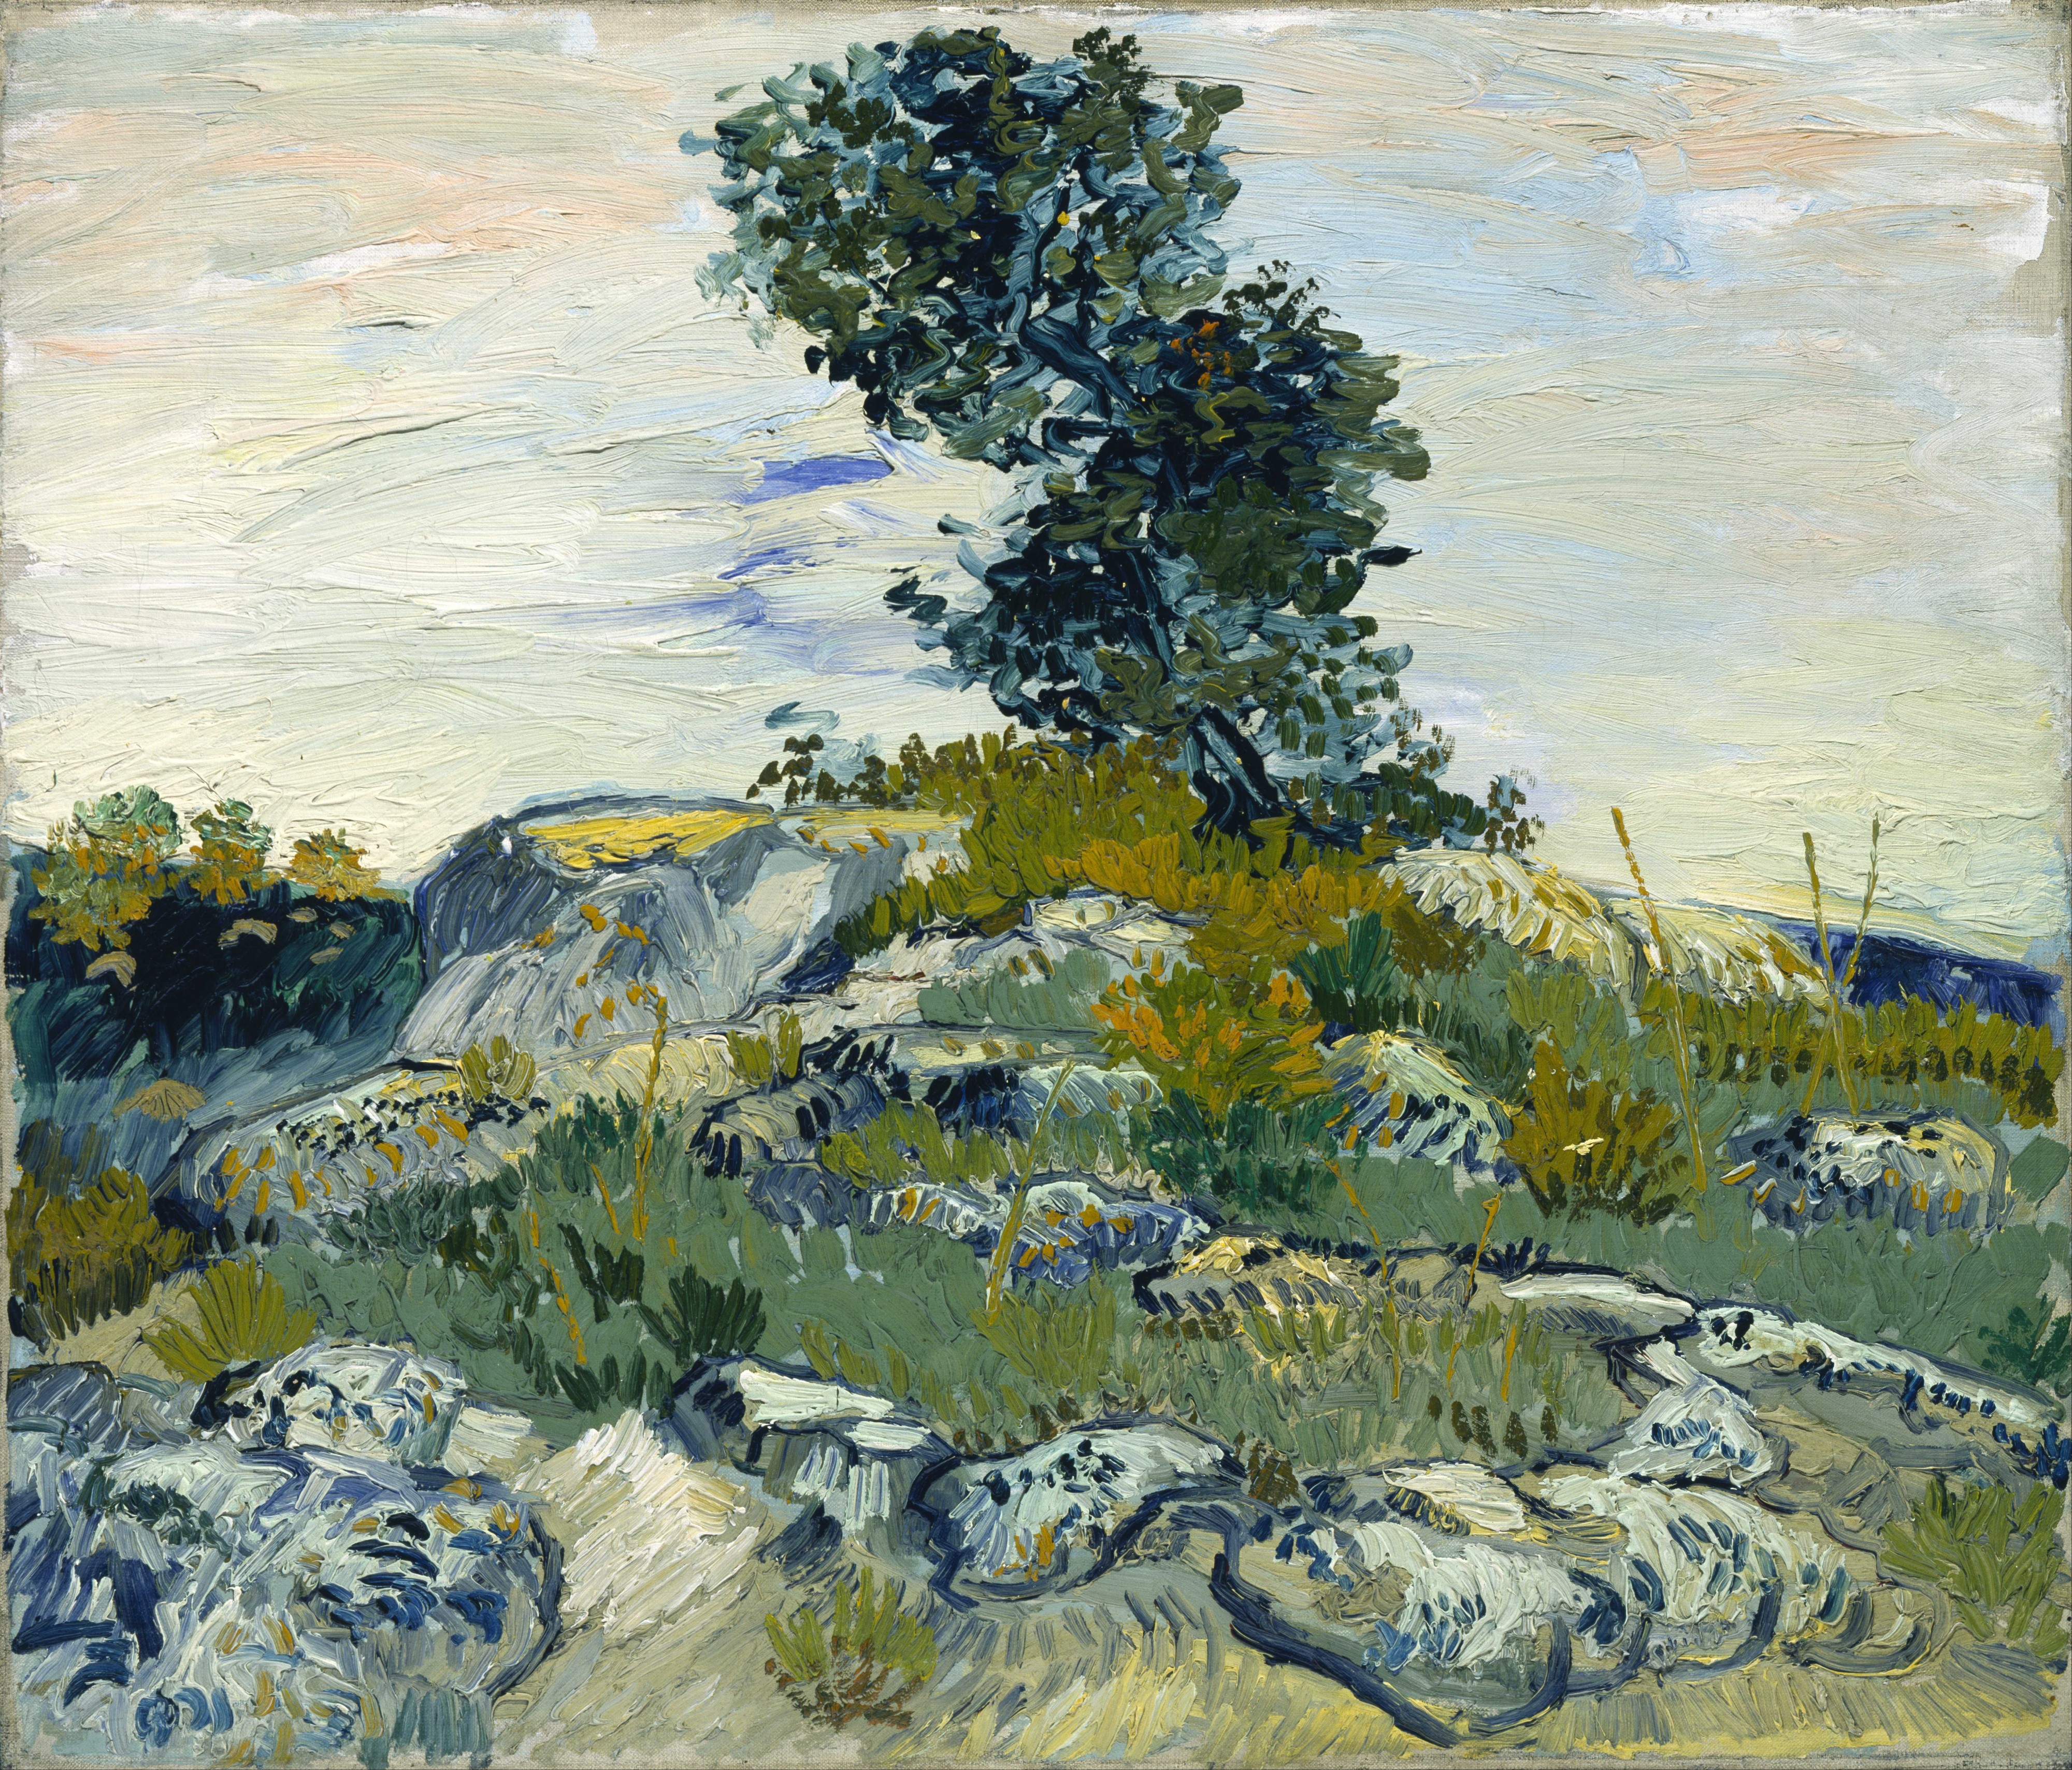 Vincent van Gogh - The Rocks - Google Art Project